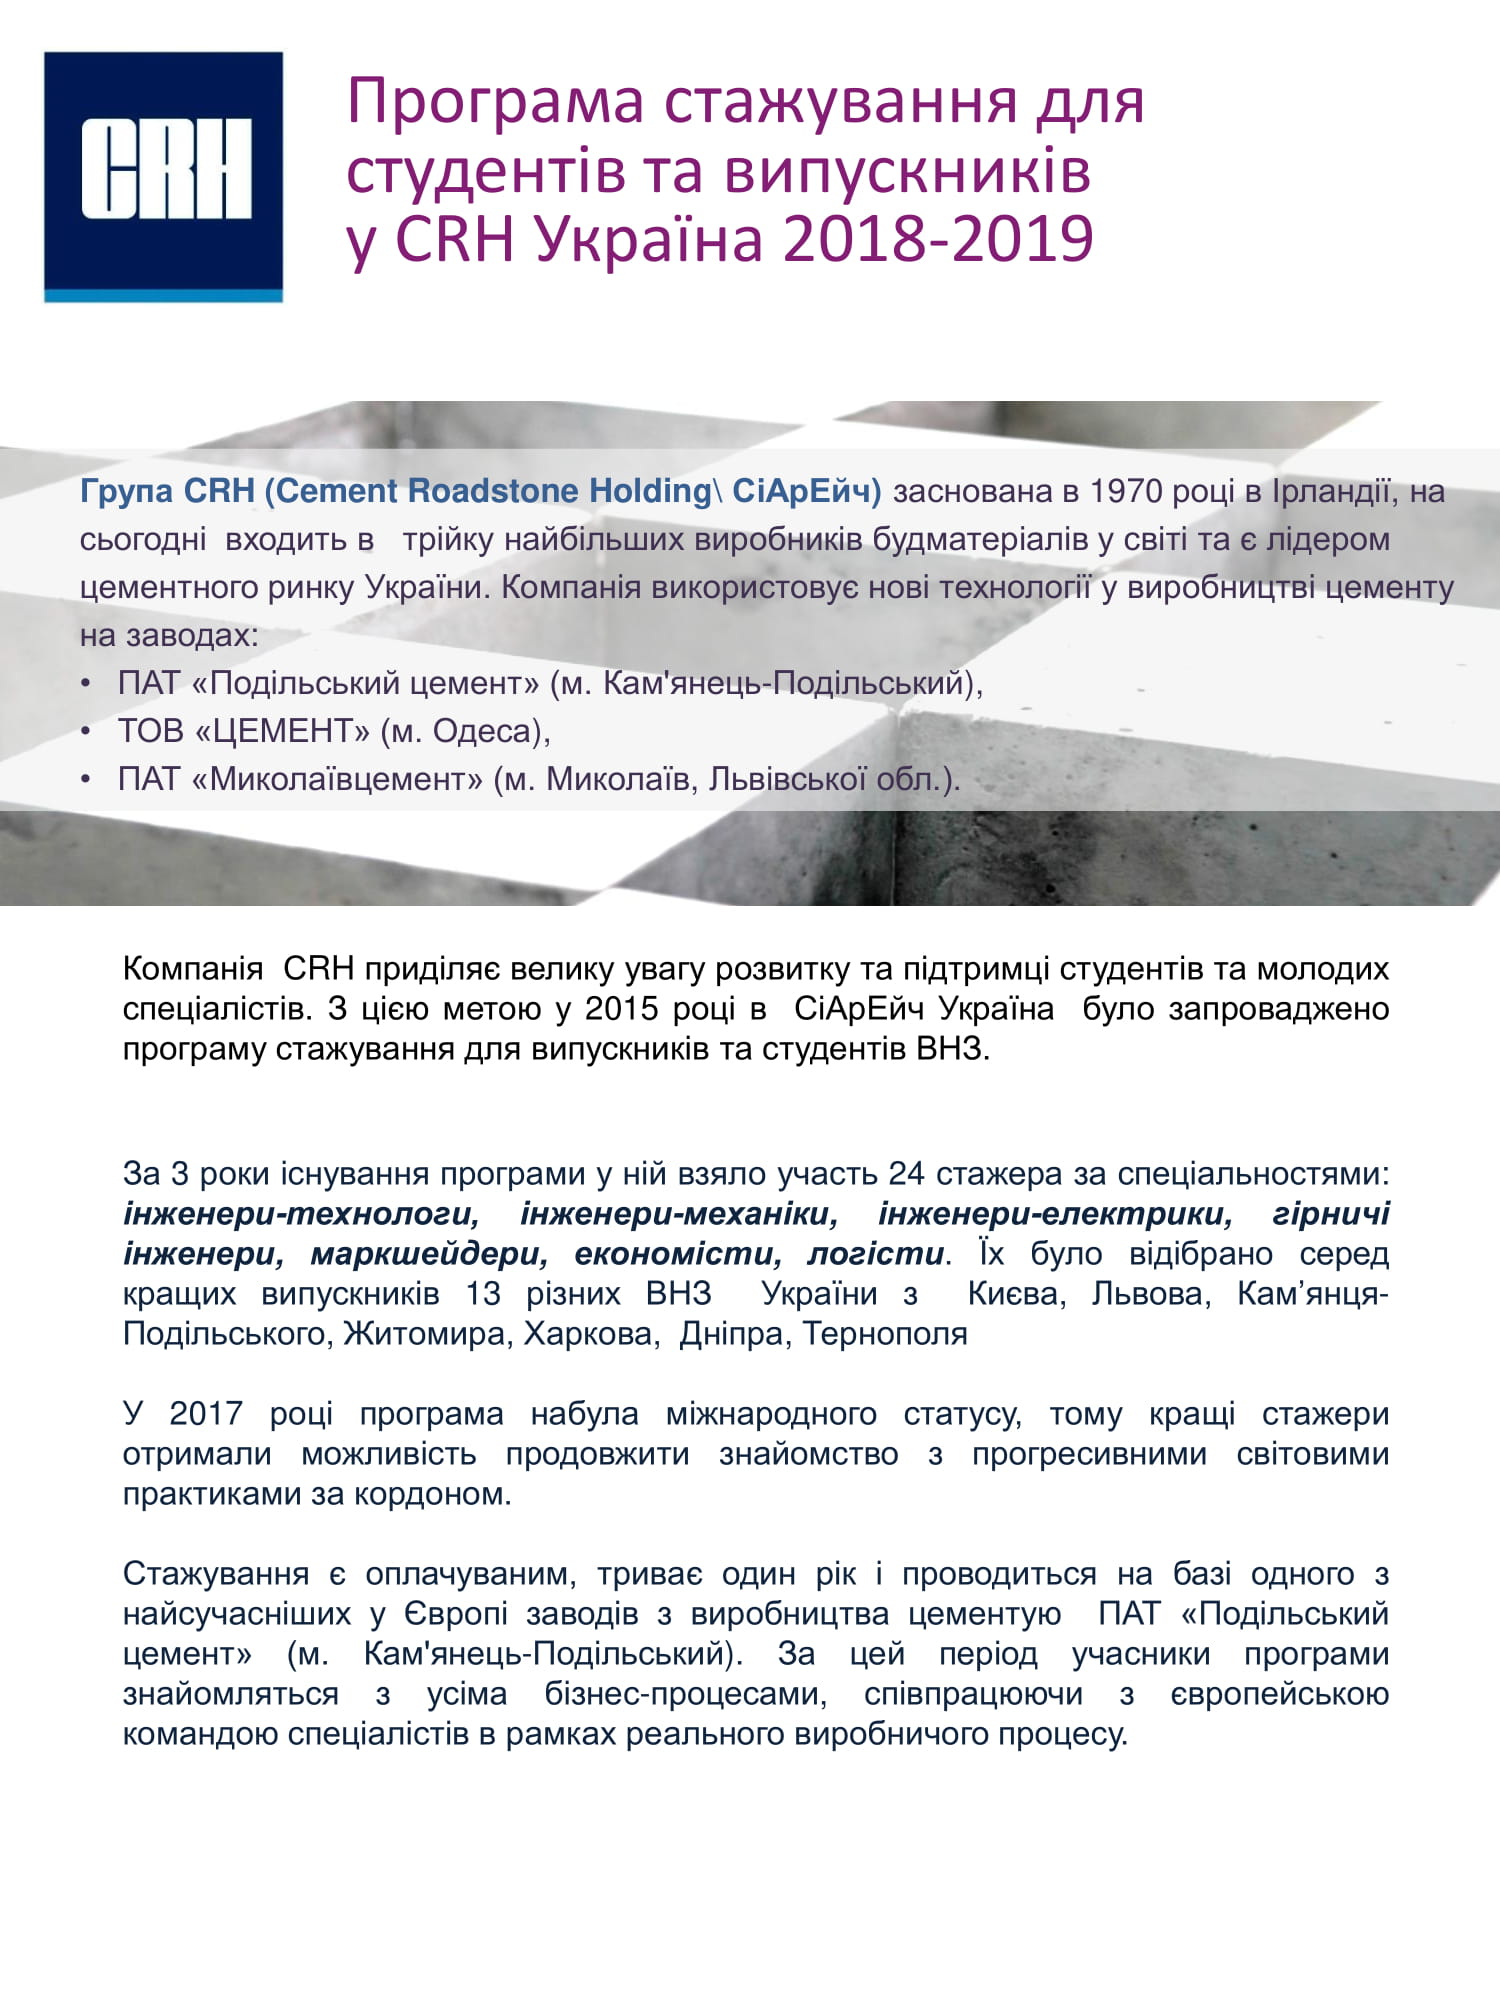 Информация о программе 2018-2019 ч.1